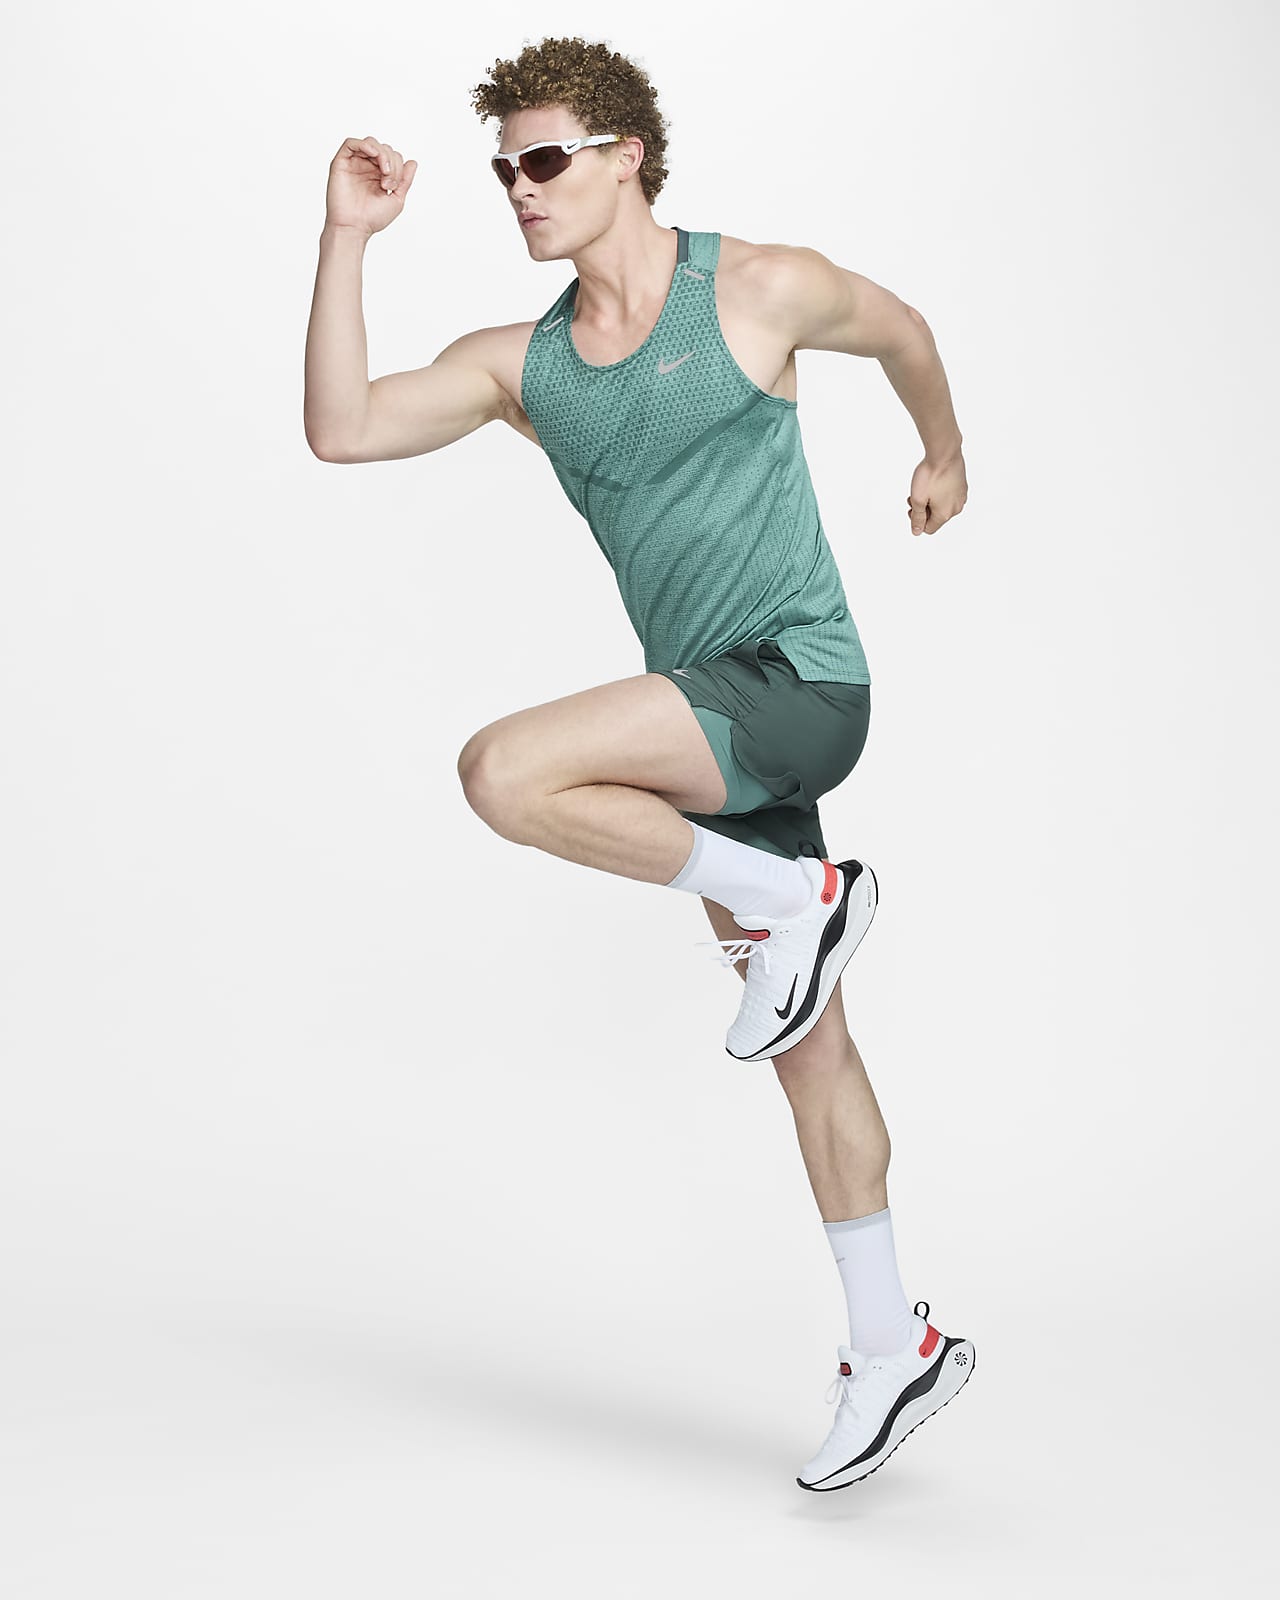  Nike Men's Dri-Fit ADV TechKnit Ultra Running Tank top